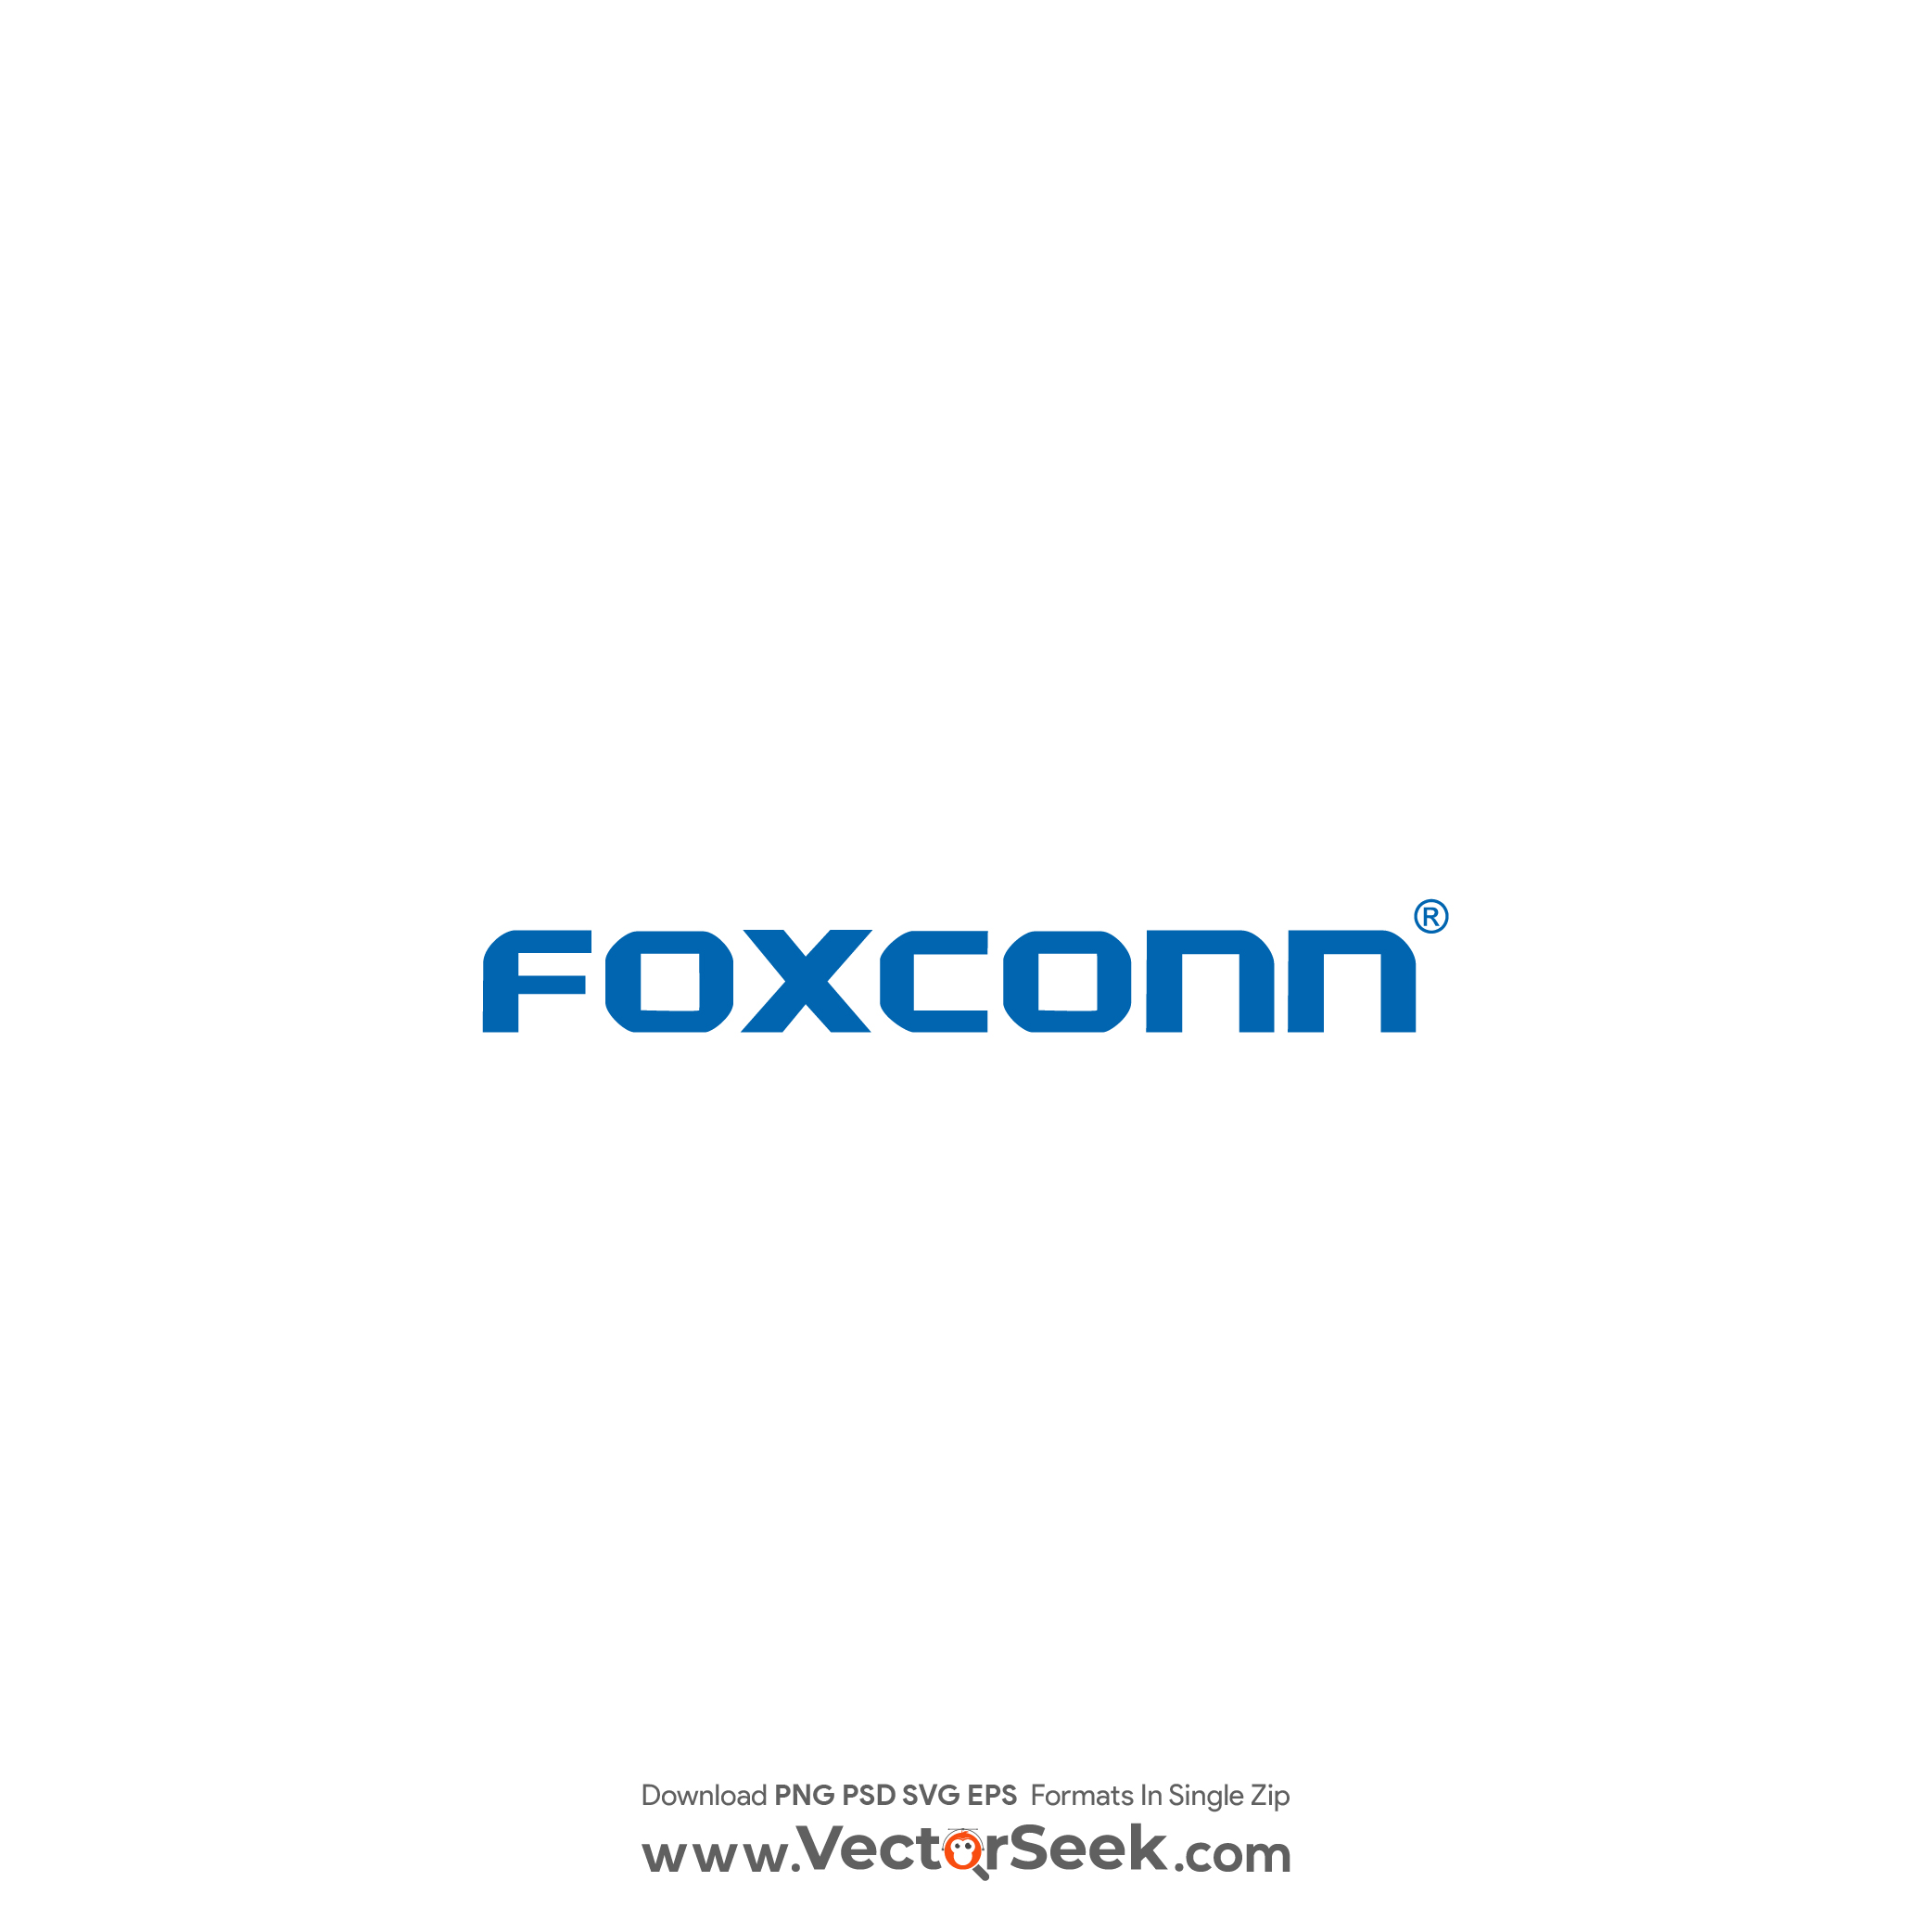 Foxconn Logo Vector